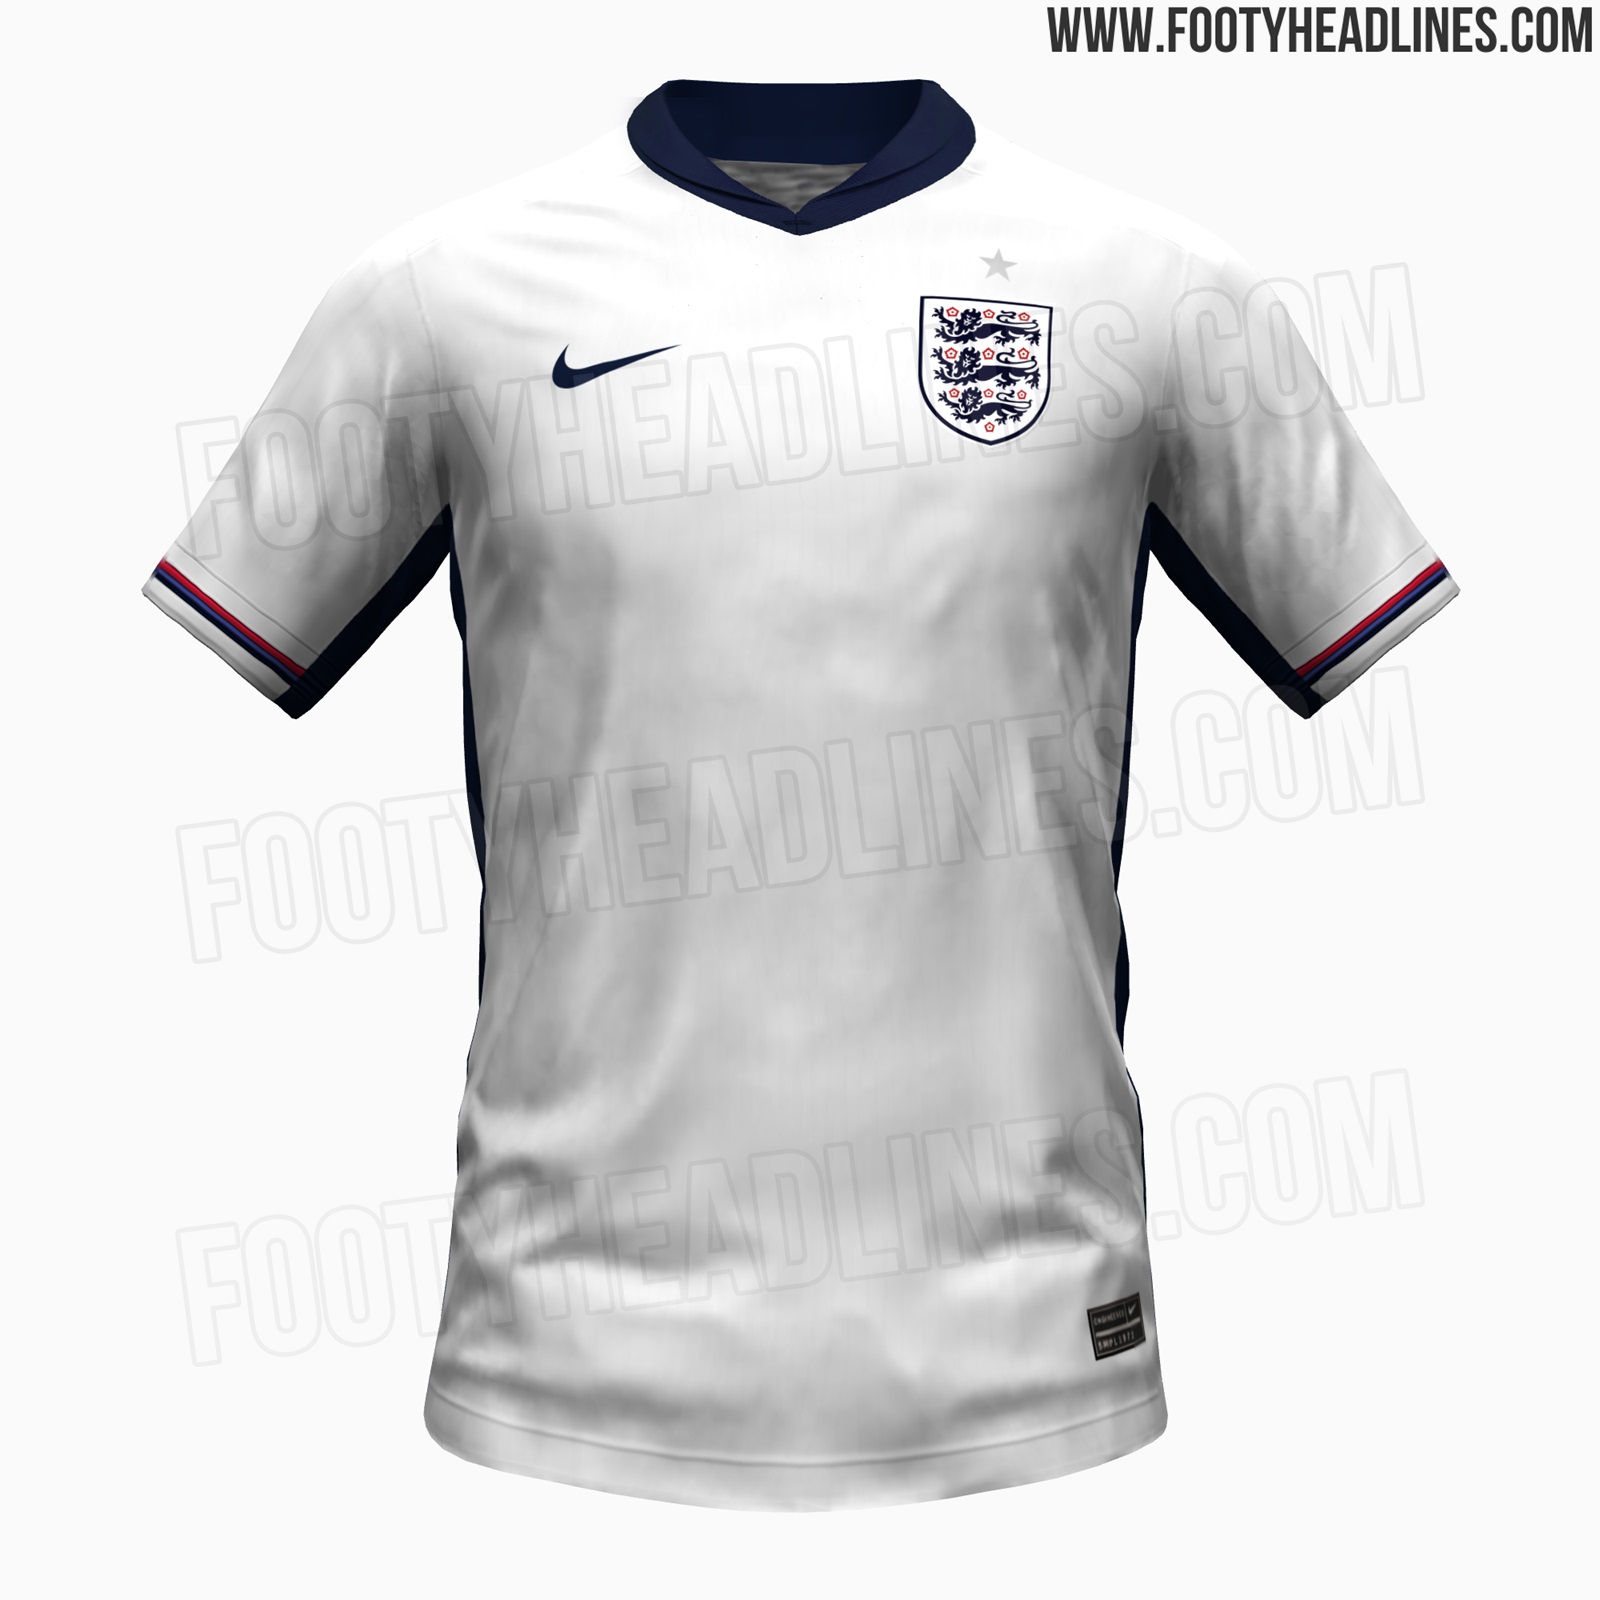 Stunning Nike England Euro 2024 Anthem Jacket Leaked Footy Headlines